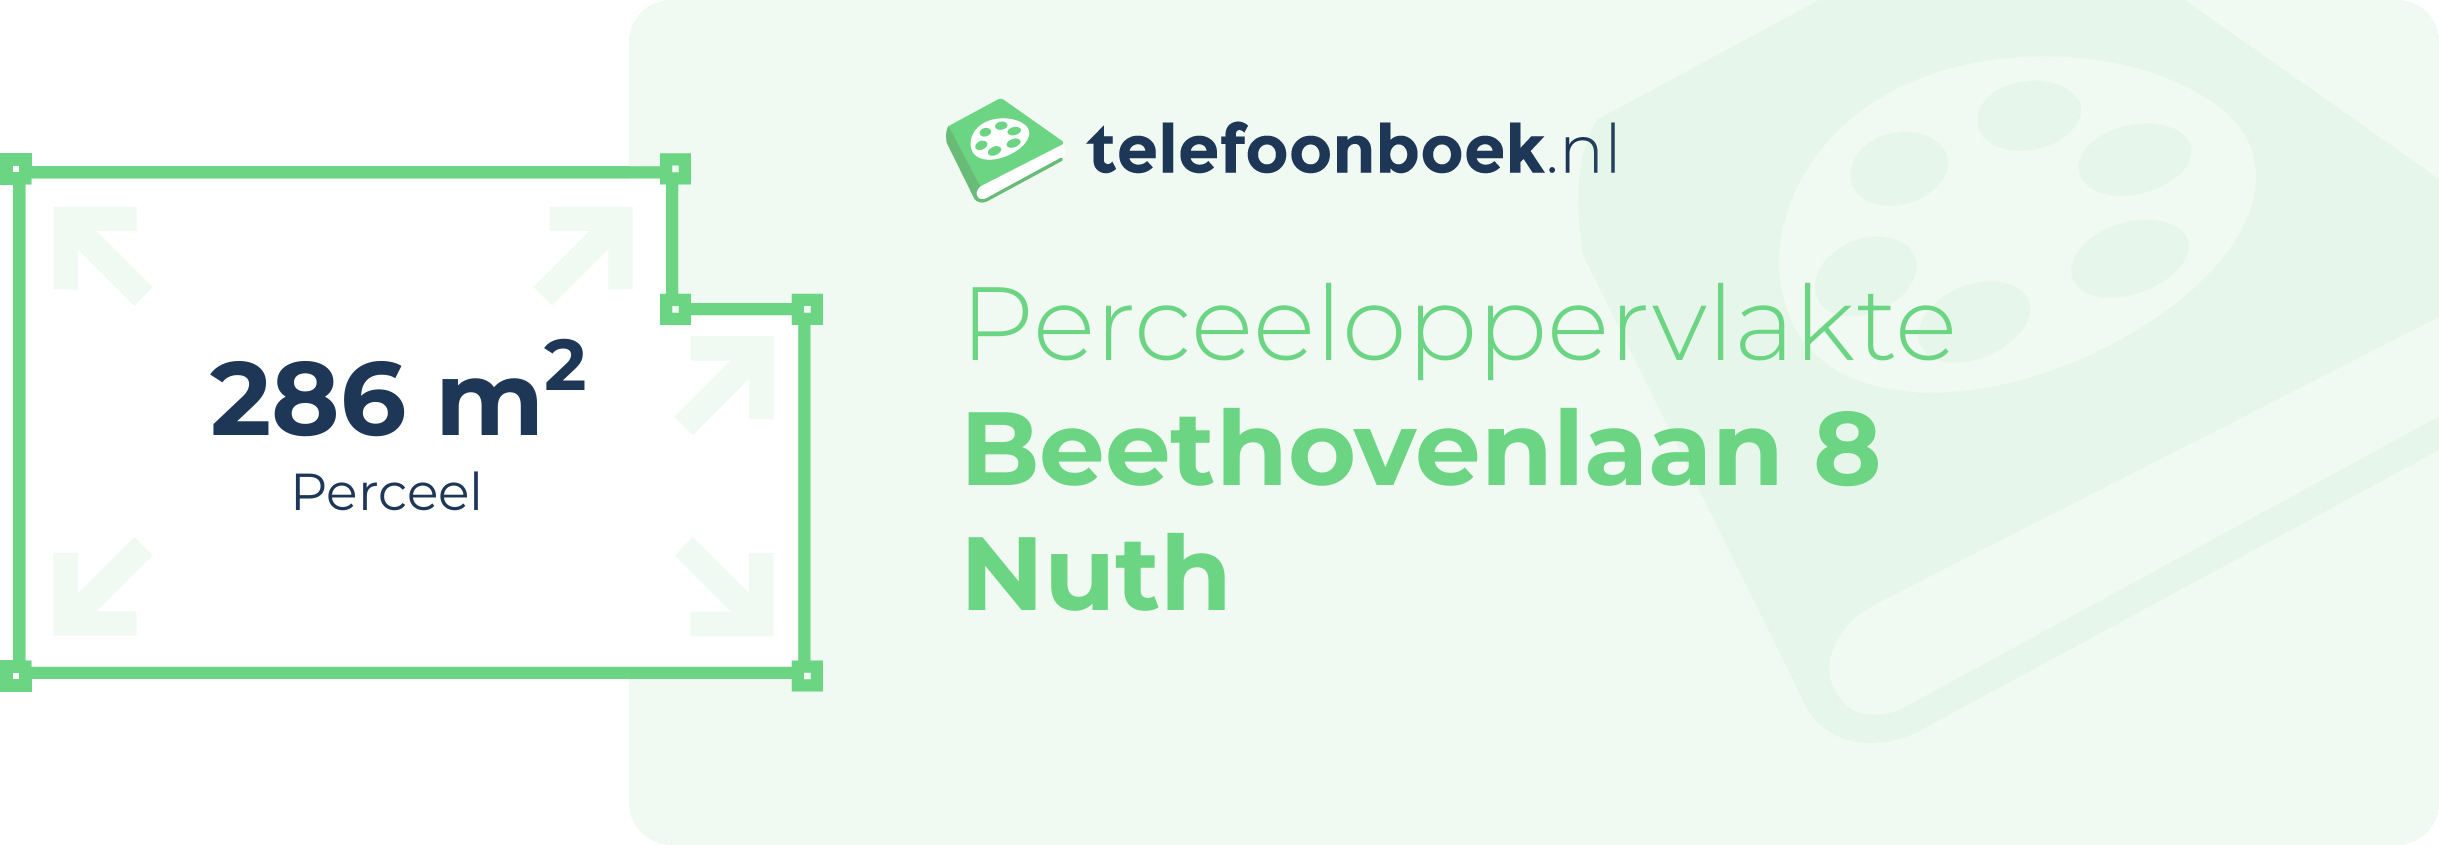 Perceeloppervlakte Beethovenlaan 8 Nuth